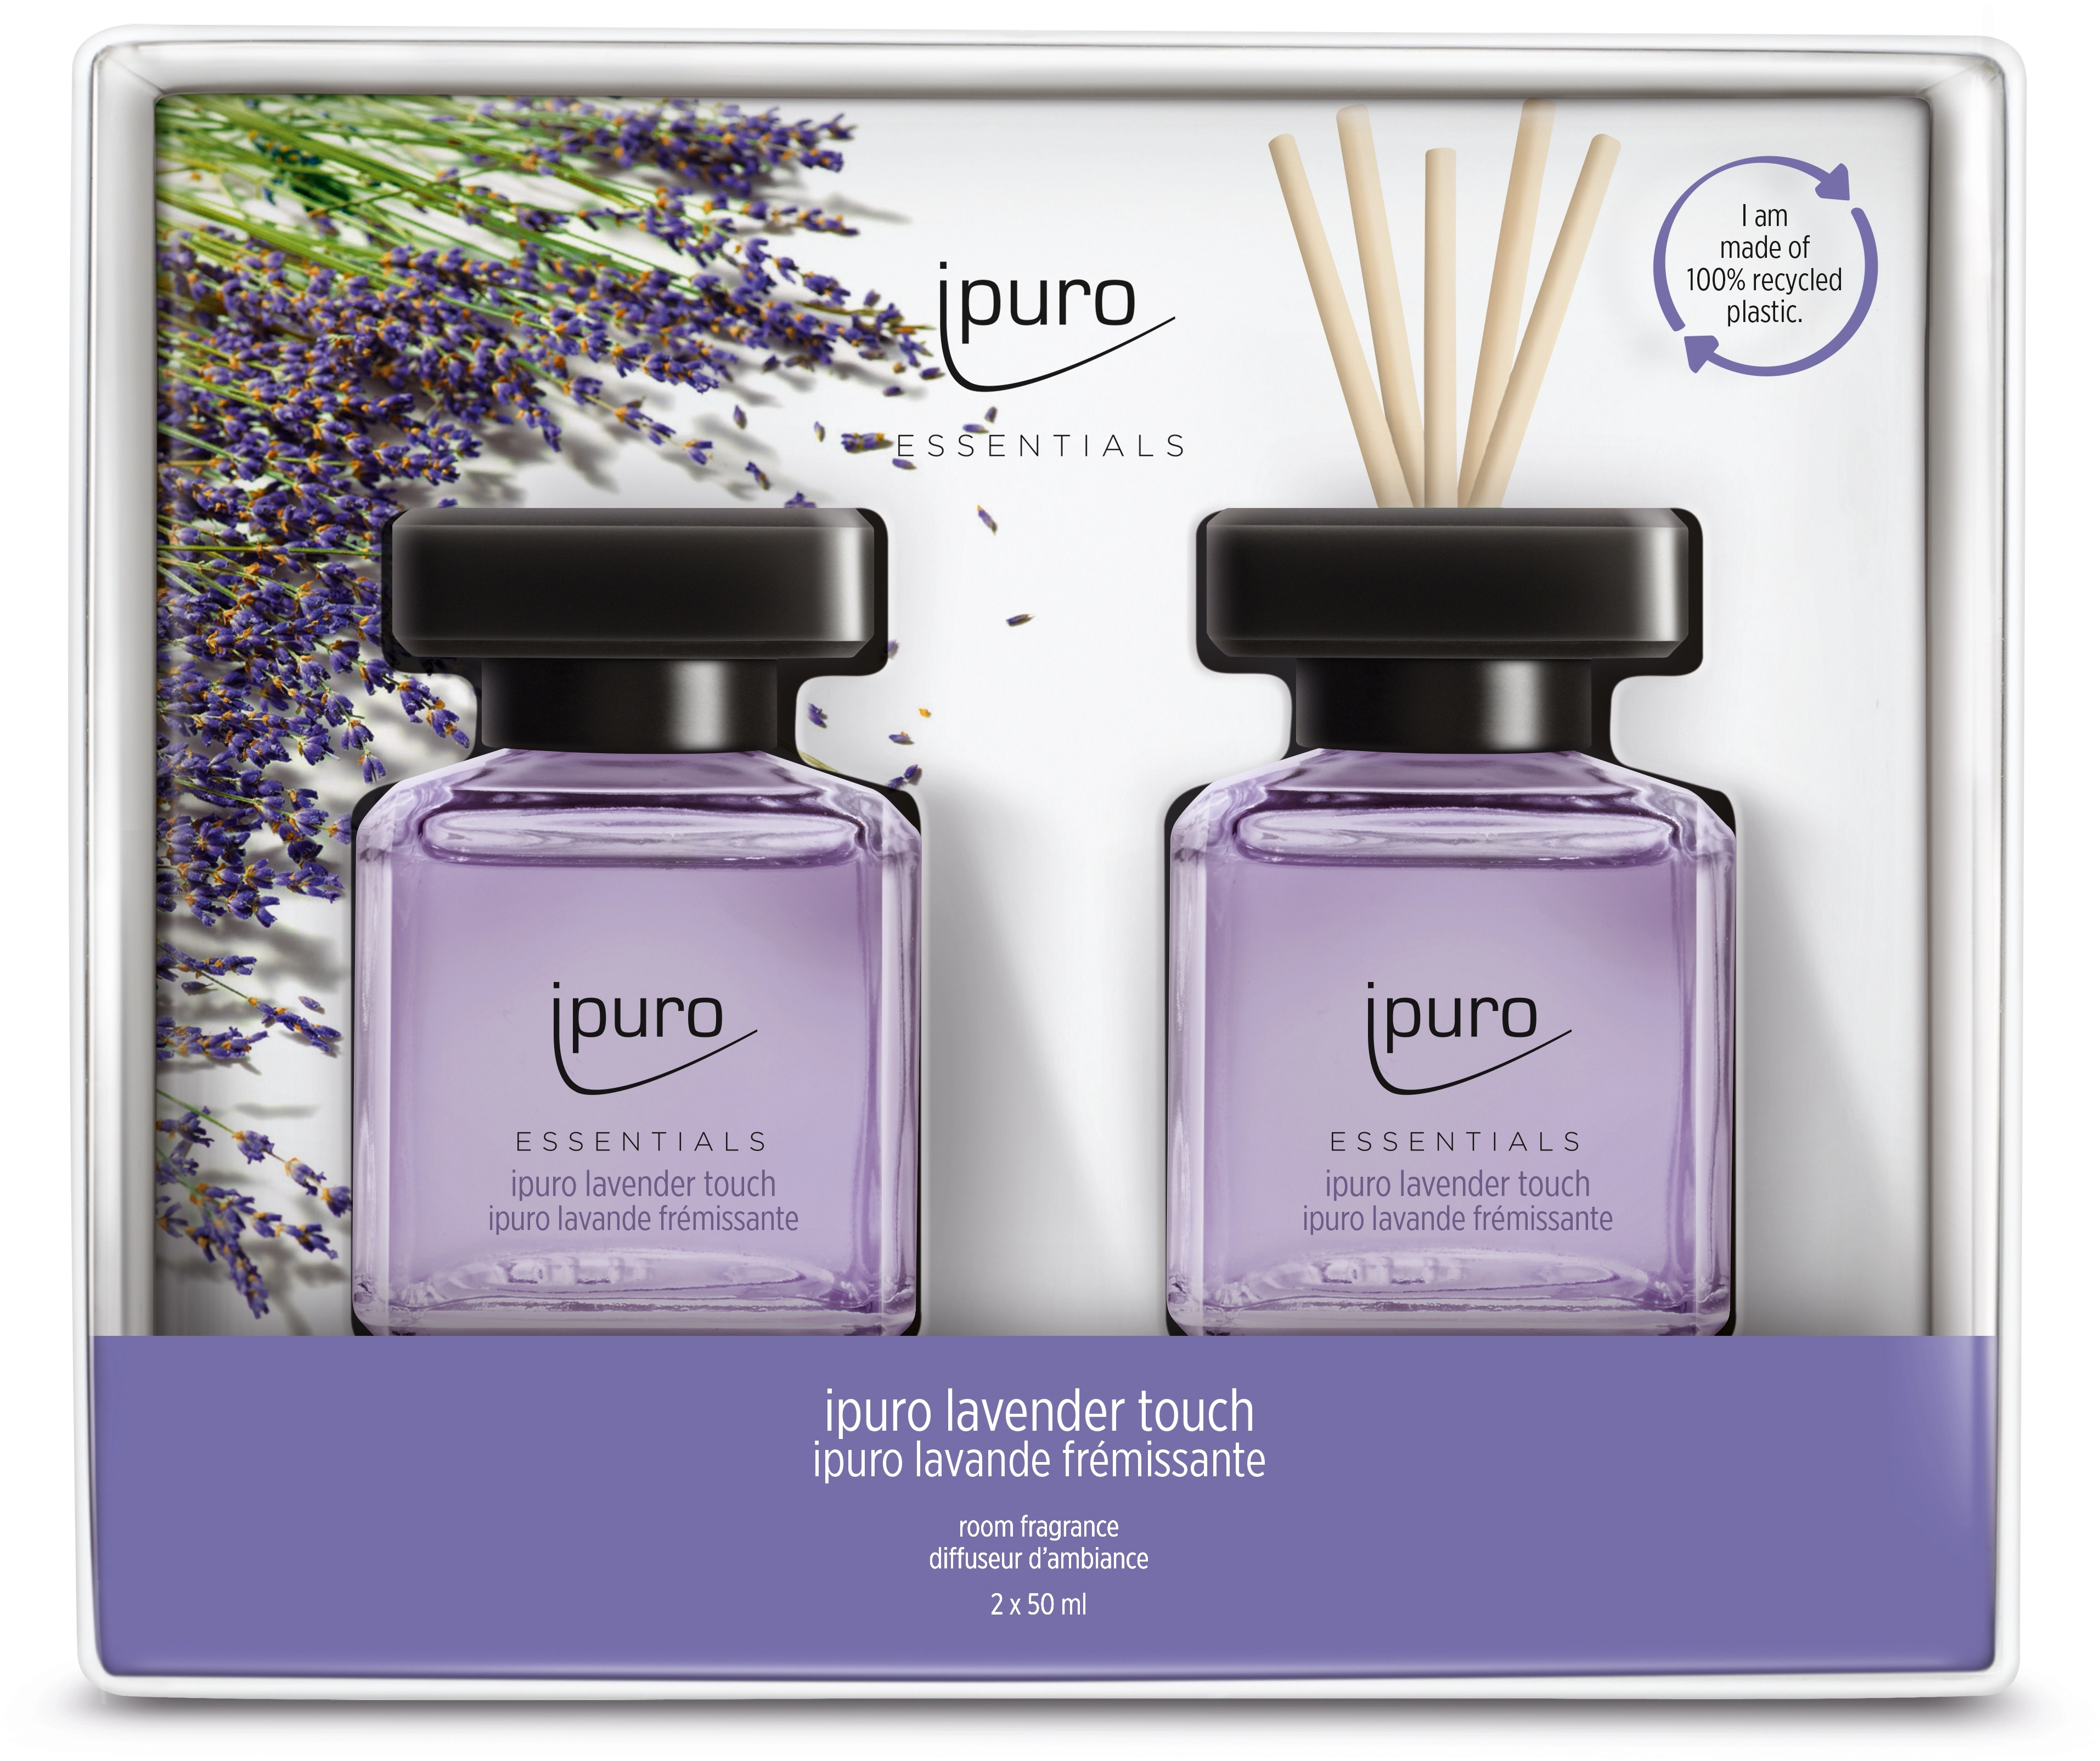 Ipuro Raumduft Essentials 2-er Set Cinnamon Secret & Vanilla Dream kaufen  bei OBI